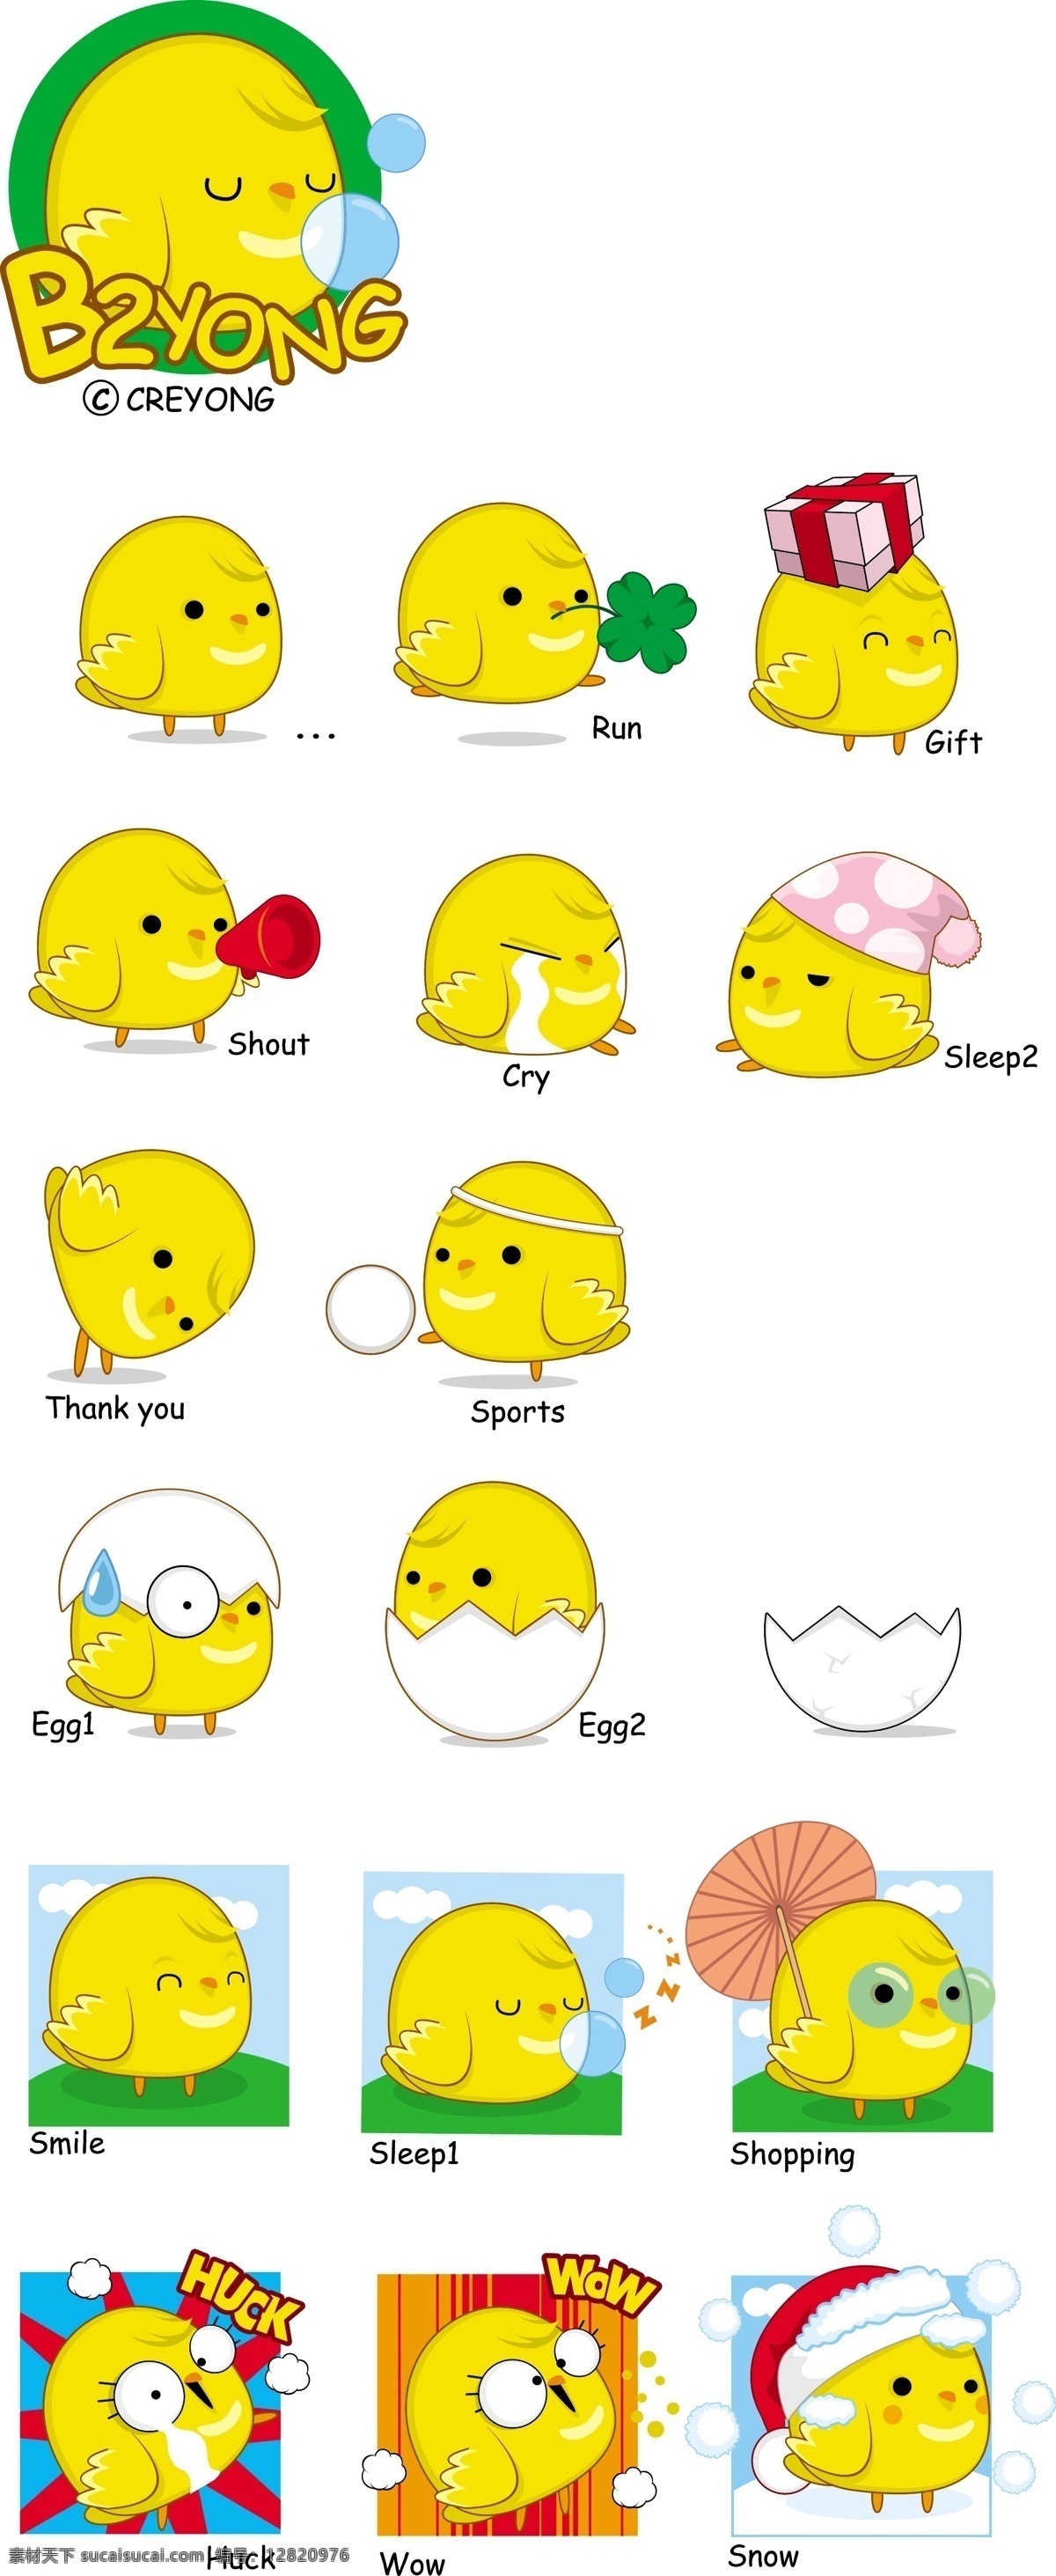 可爱 小鸡 矢量图 矢量 可爱小鸡 黄色小鸡 蛋壳 运动 卡通设计